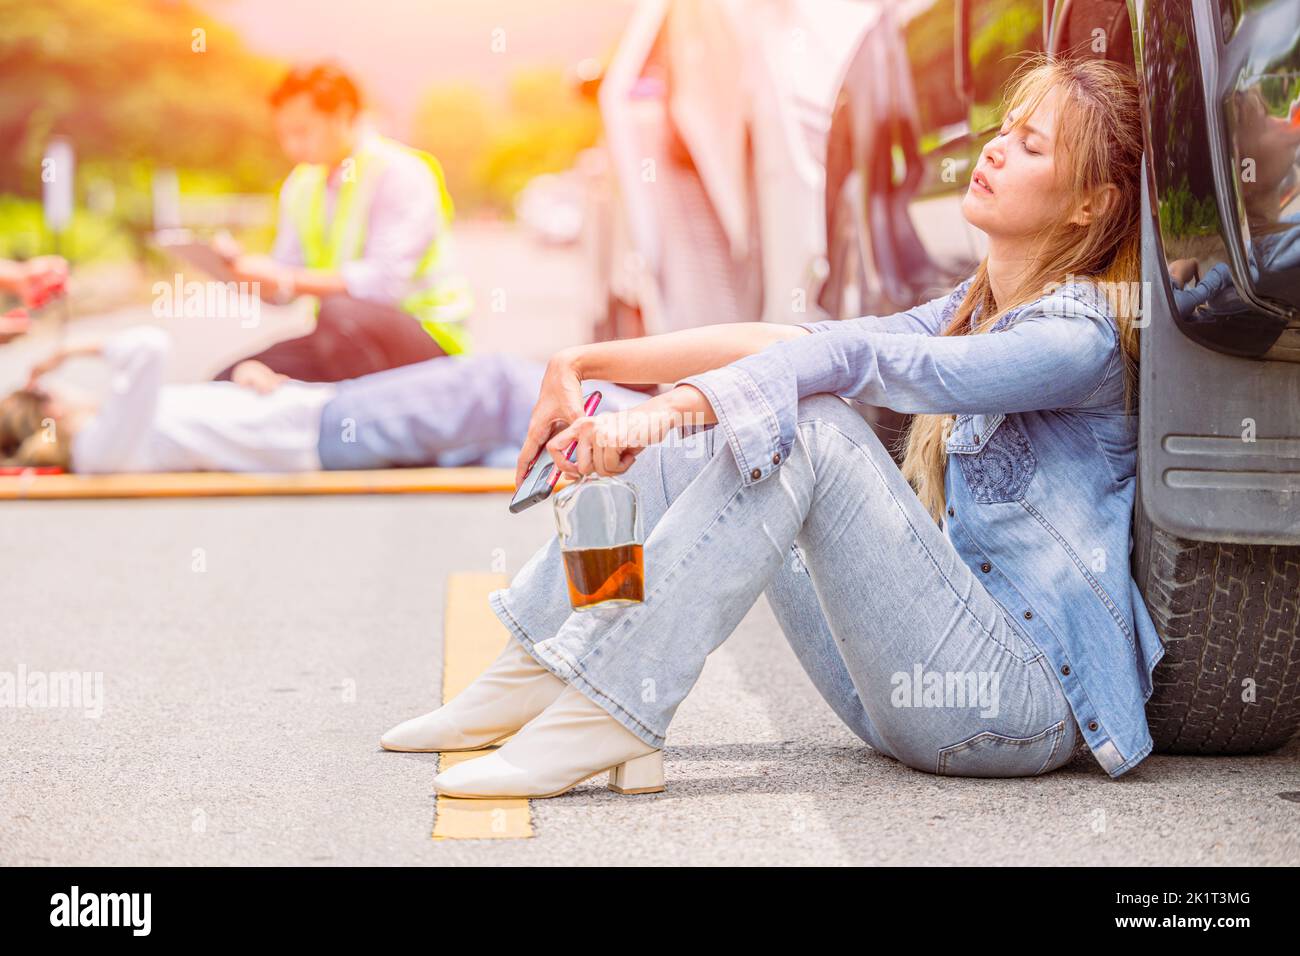 las mujeres adolescentes beben alcohol durante la conducción un accidente de coche en la carretera sentado dormir inconsciente Foto de stock